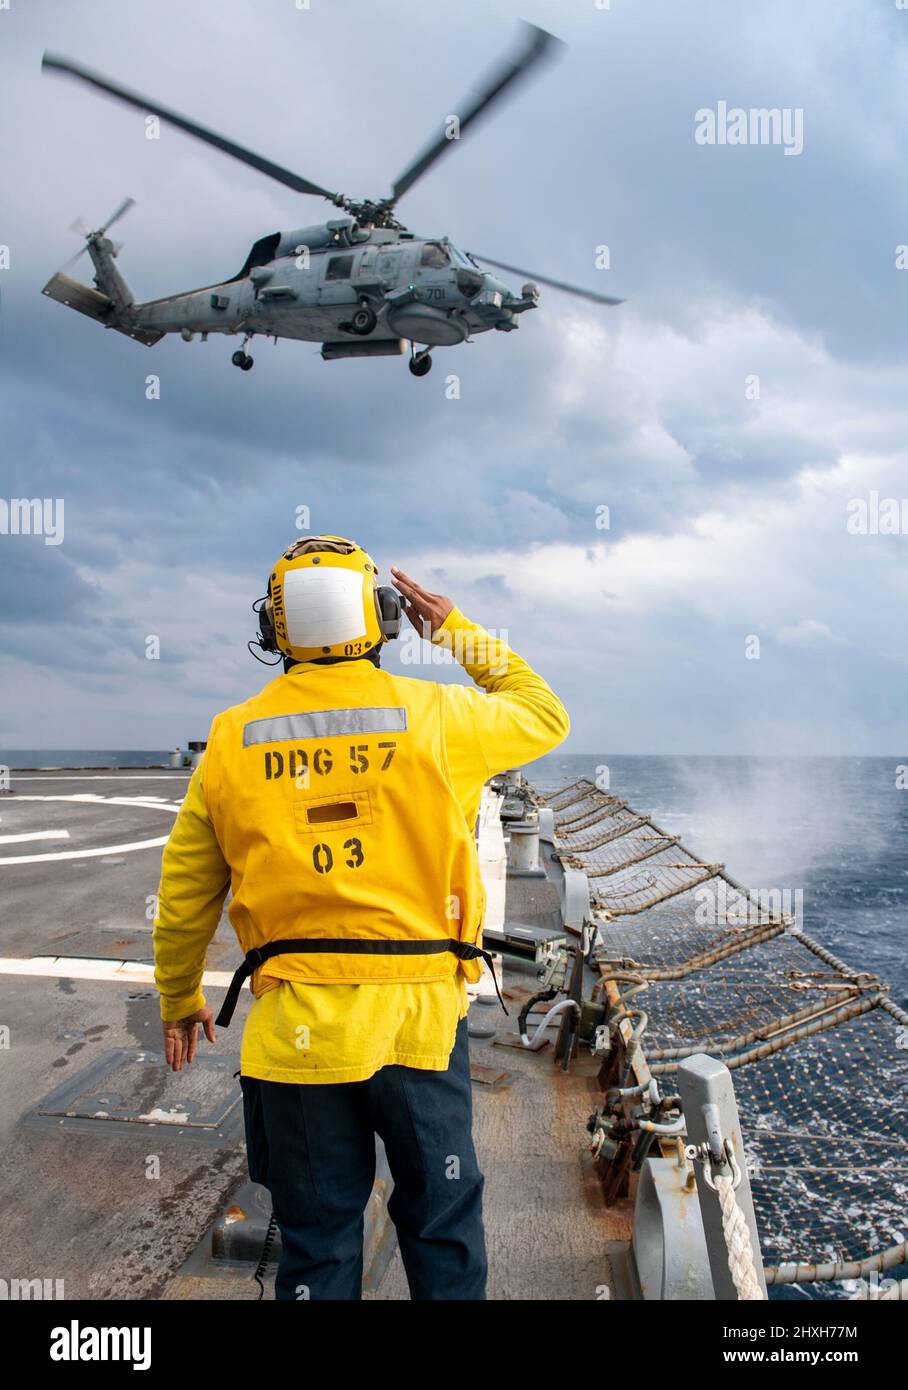 220308-N-HG846-2088 IONISCHES MEER (8. März 2022) – Boatswains Mate 3. Klasse Tra’shaun Cooper aus Homestead, Texas, begrüßt die Piloten eines Hubschraubers MH-60R Sea Hawk, der den „Proud Warriors“ von Helicopter Maritime Strike Squadron (HSM) 72 zugewiesen wurde, als sie das Flugdeck des Lenkraketenzerstörers USS Mitscher der Arleigh Burke-Klasse verlassen (DDG 57), 8. März 2022. Mitscher wird derzeit bei der Harry S. Truman Carrier Strike Group im US-Einsatzgebiet der Sechsten Flotte eingesetzt, um die Interessen der USA, der Alliierten und der Partner in Europa und Afrika zu unterstützen. (USA Navy Foto von Mass Communication Spe Stockfoto